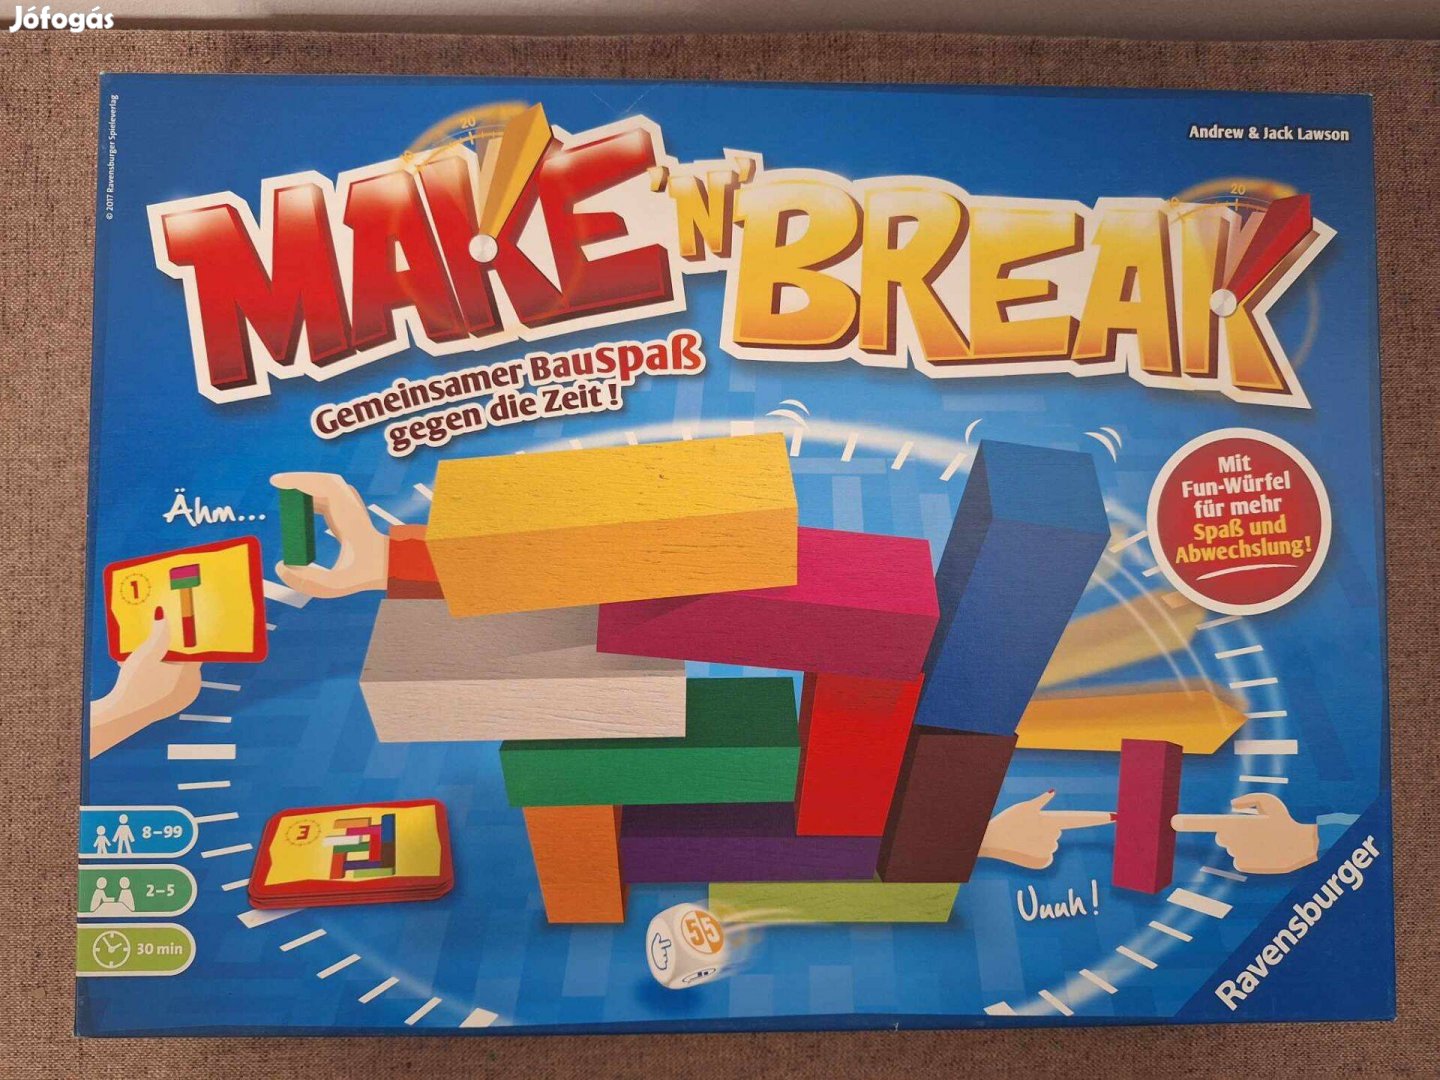 Make'n break társasjáték szórakoztató dobókockával